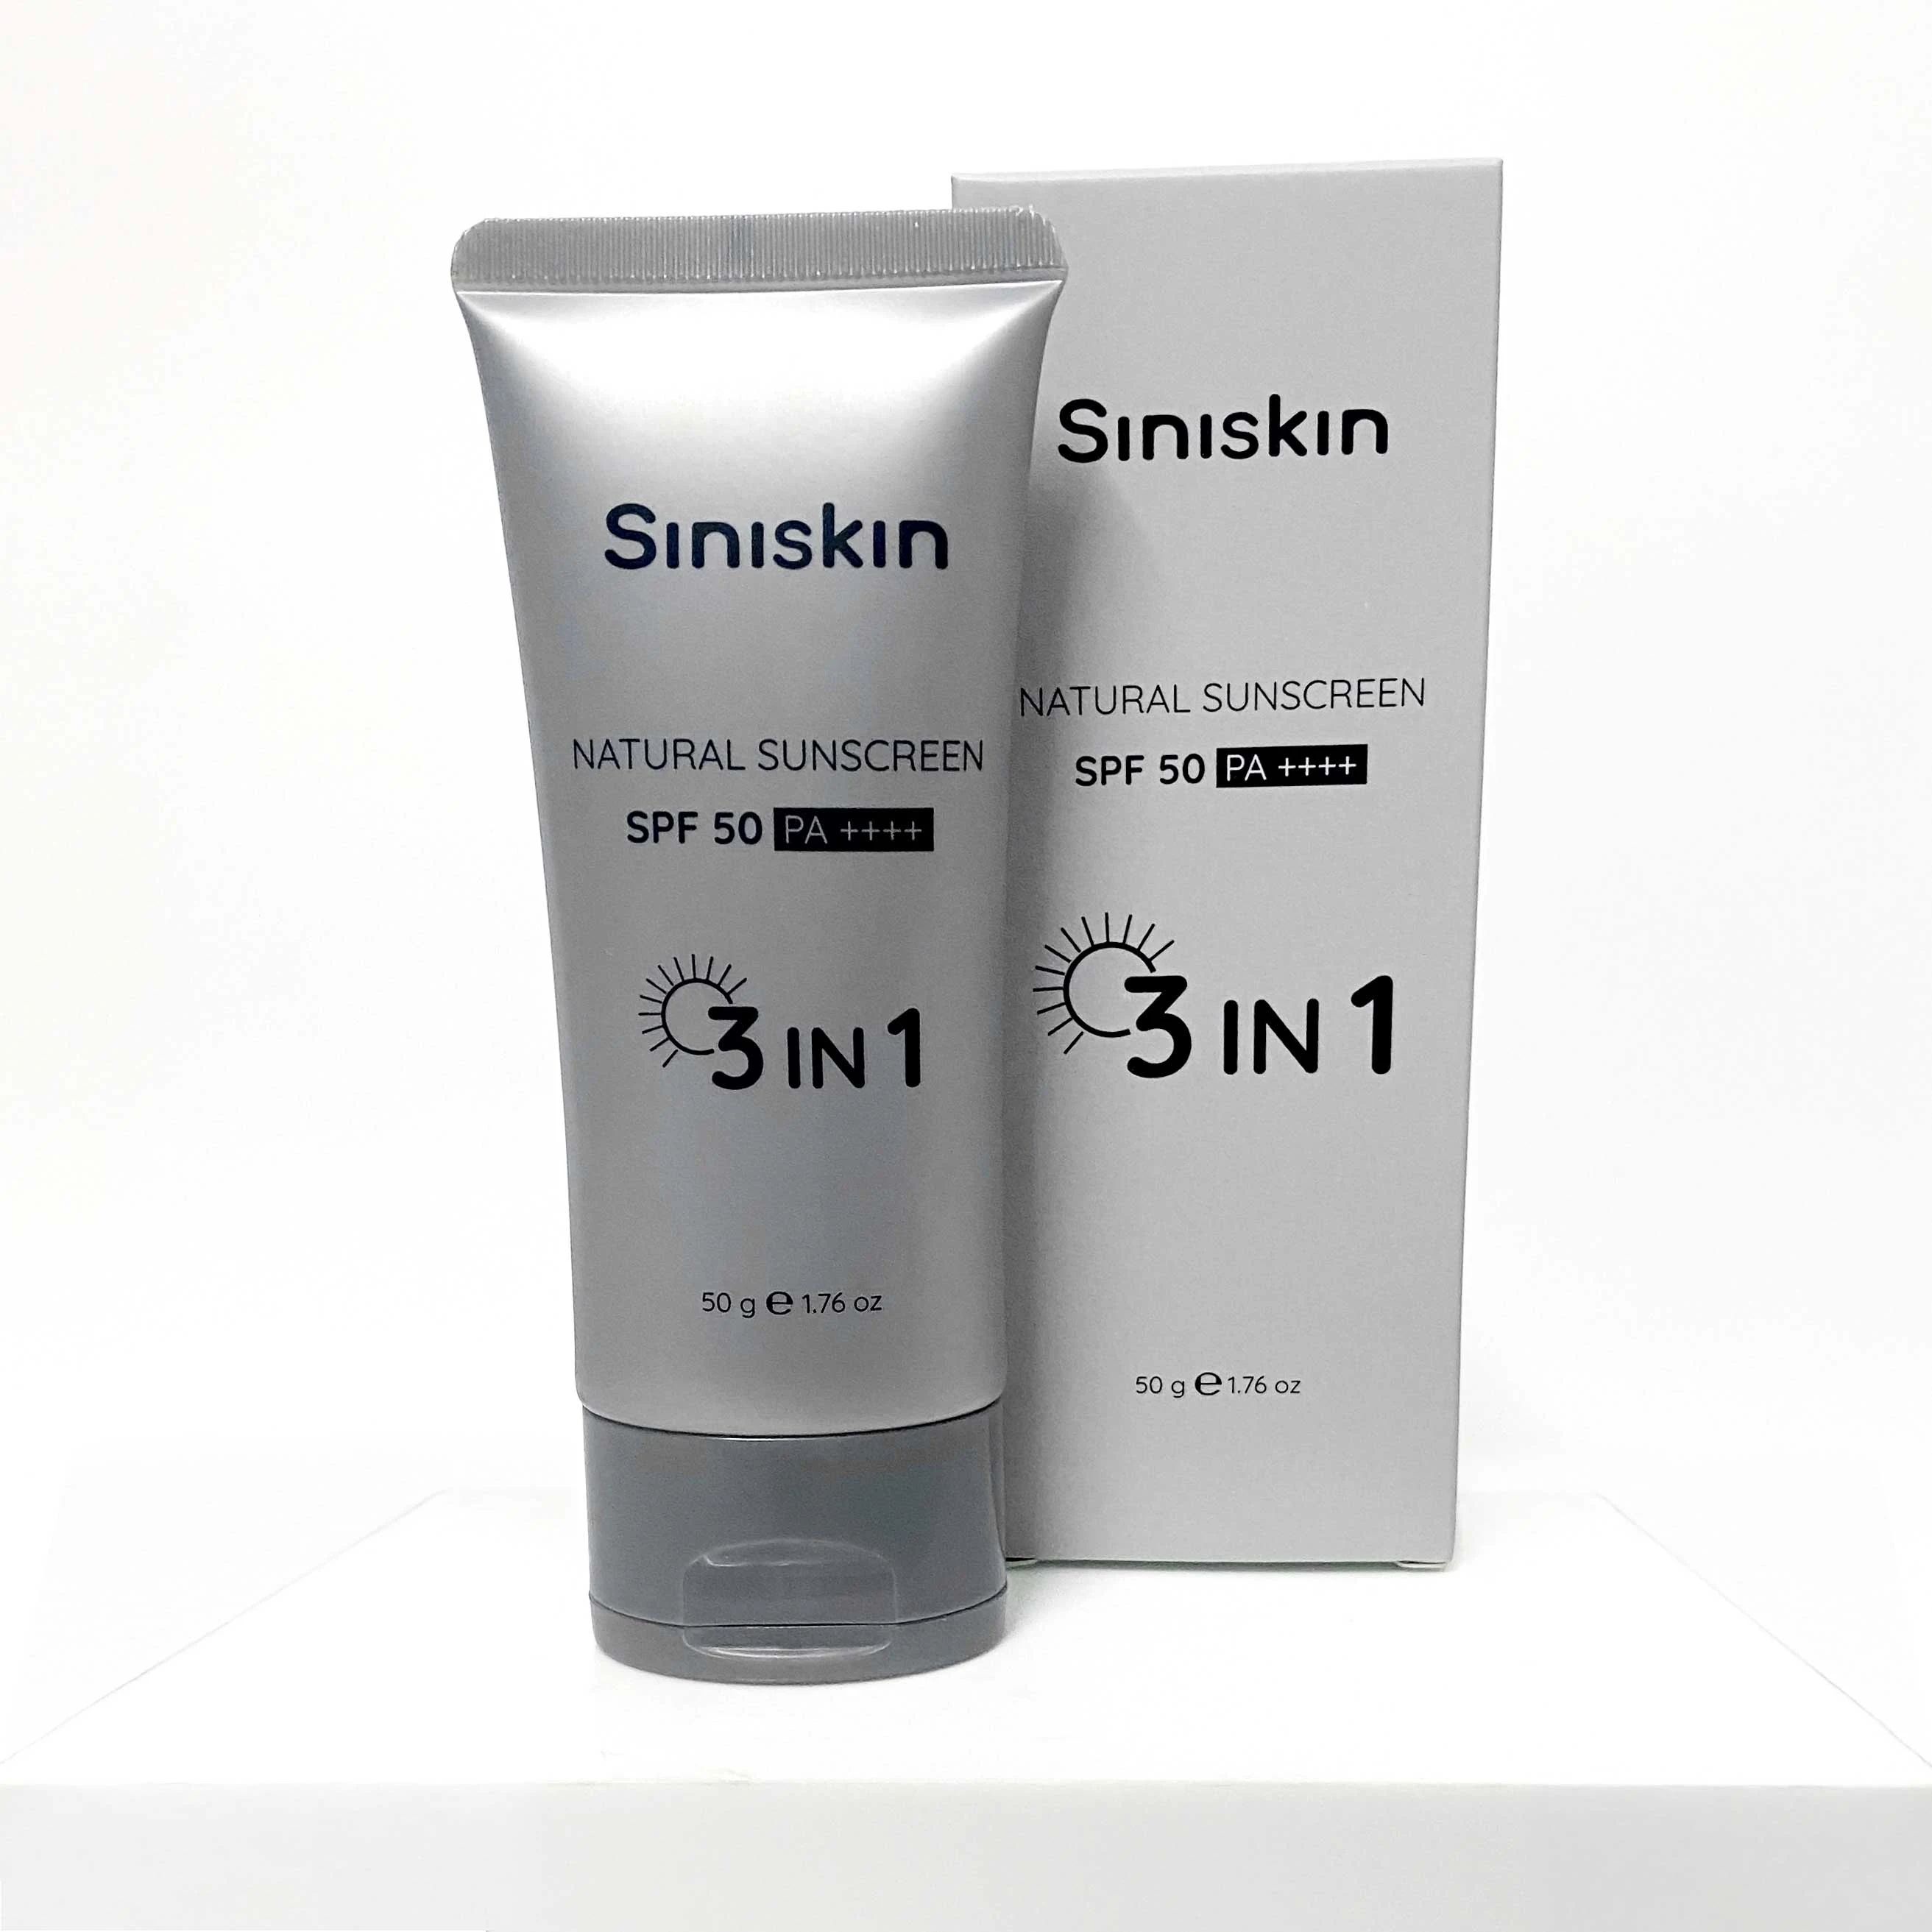 Kem chống nắng tự nhiên Siniskin Natural Sunscreen chất lượng 3in1